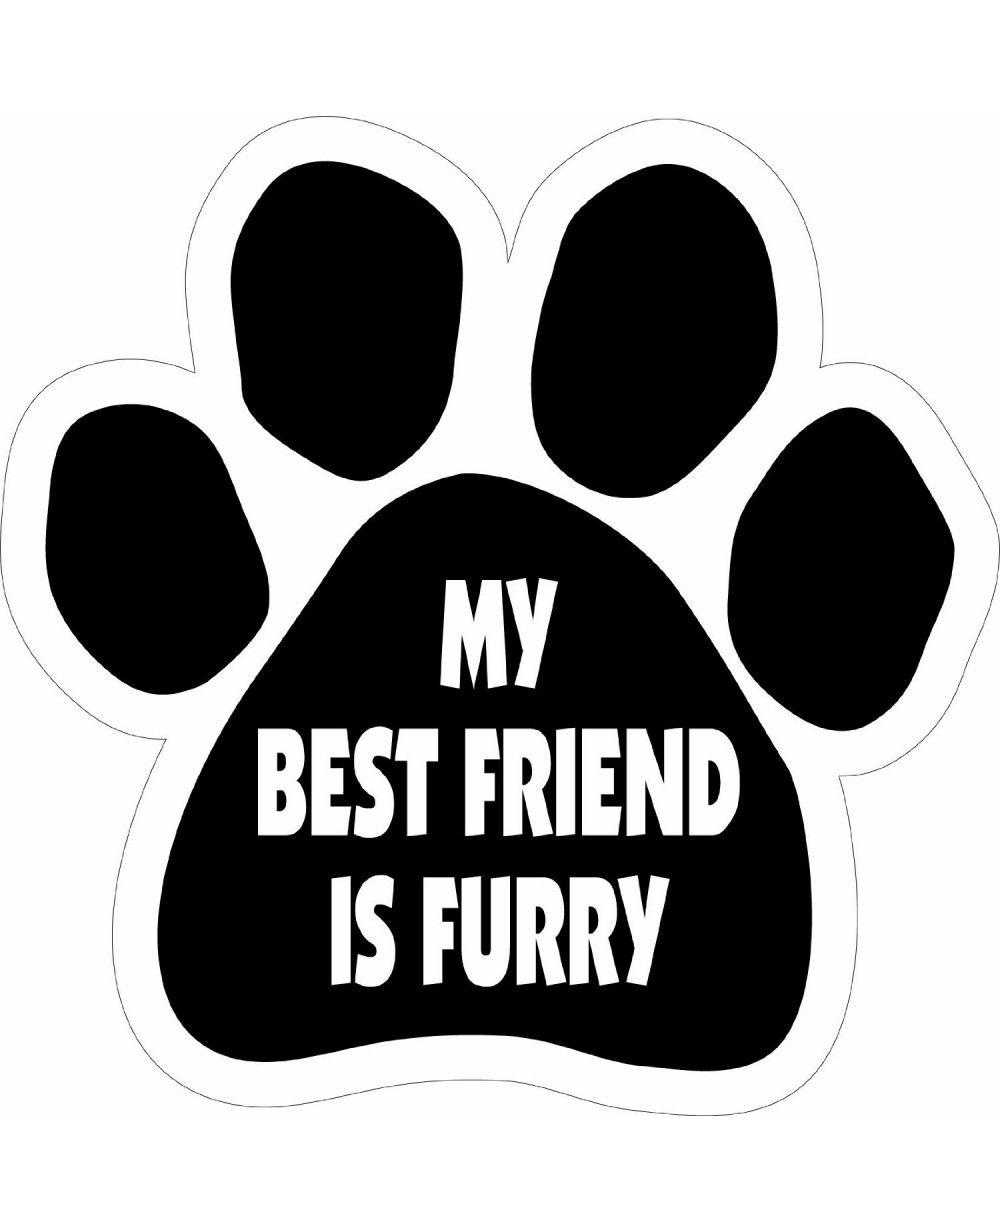 Furry Paw Logo - My Best Friend Is Furry Paw Magnet